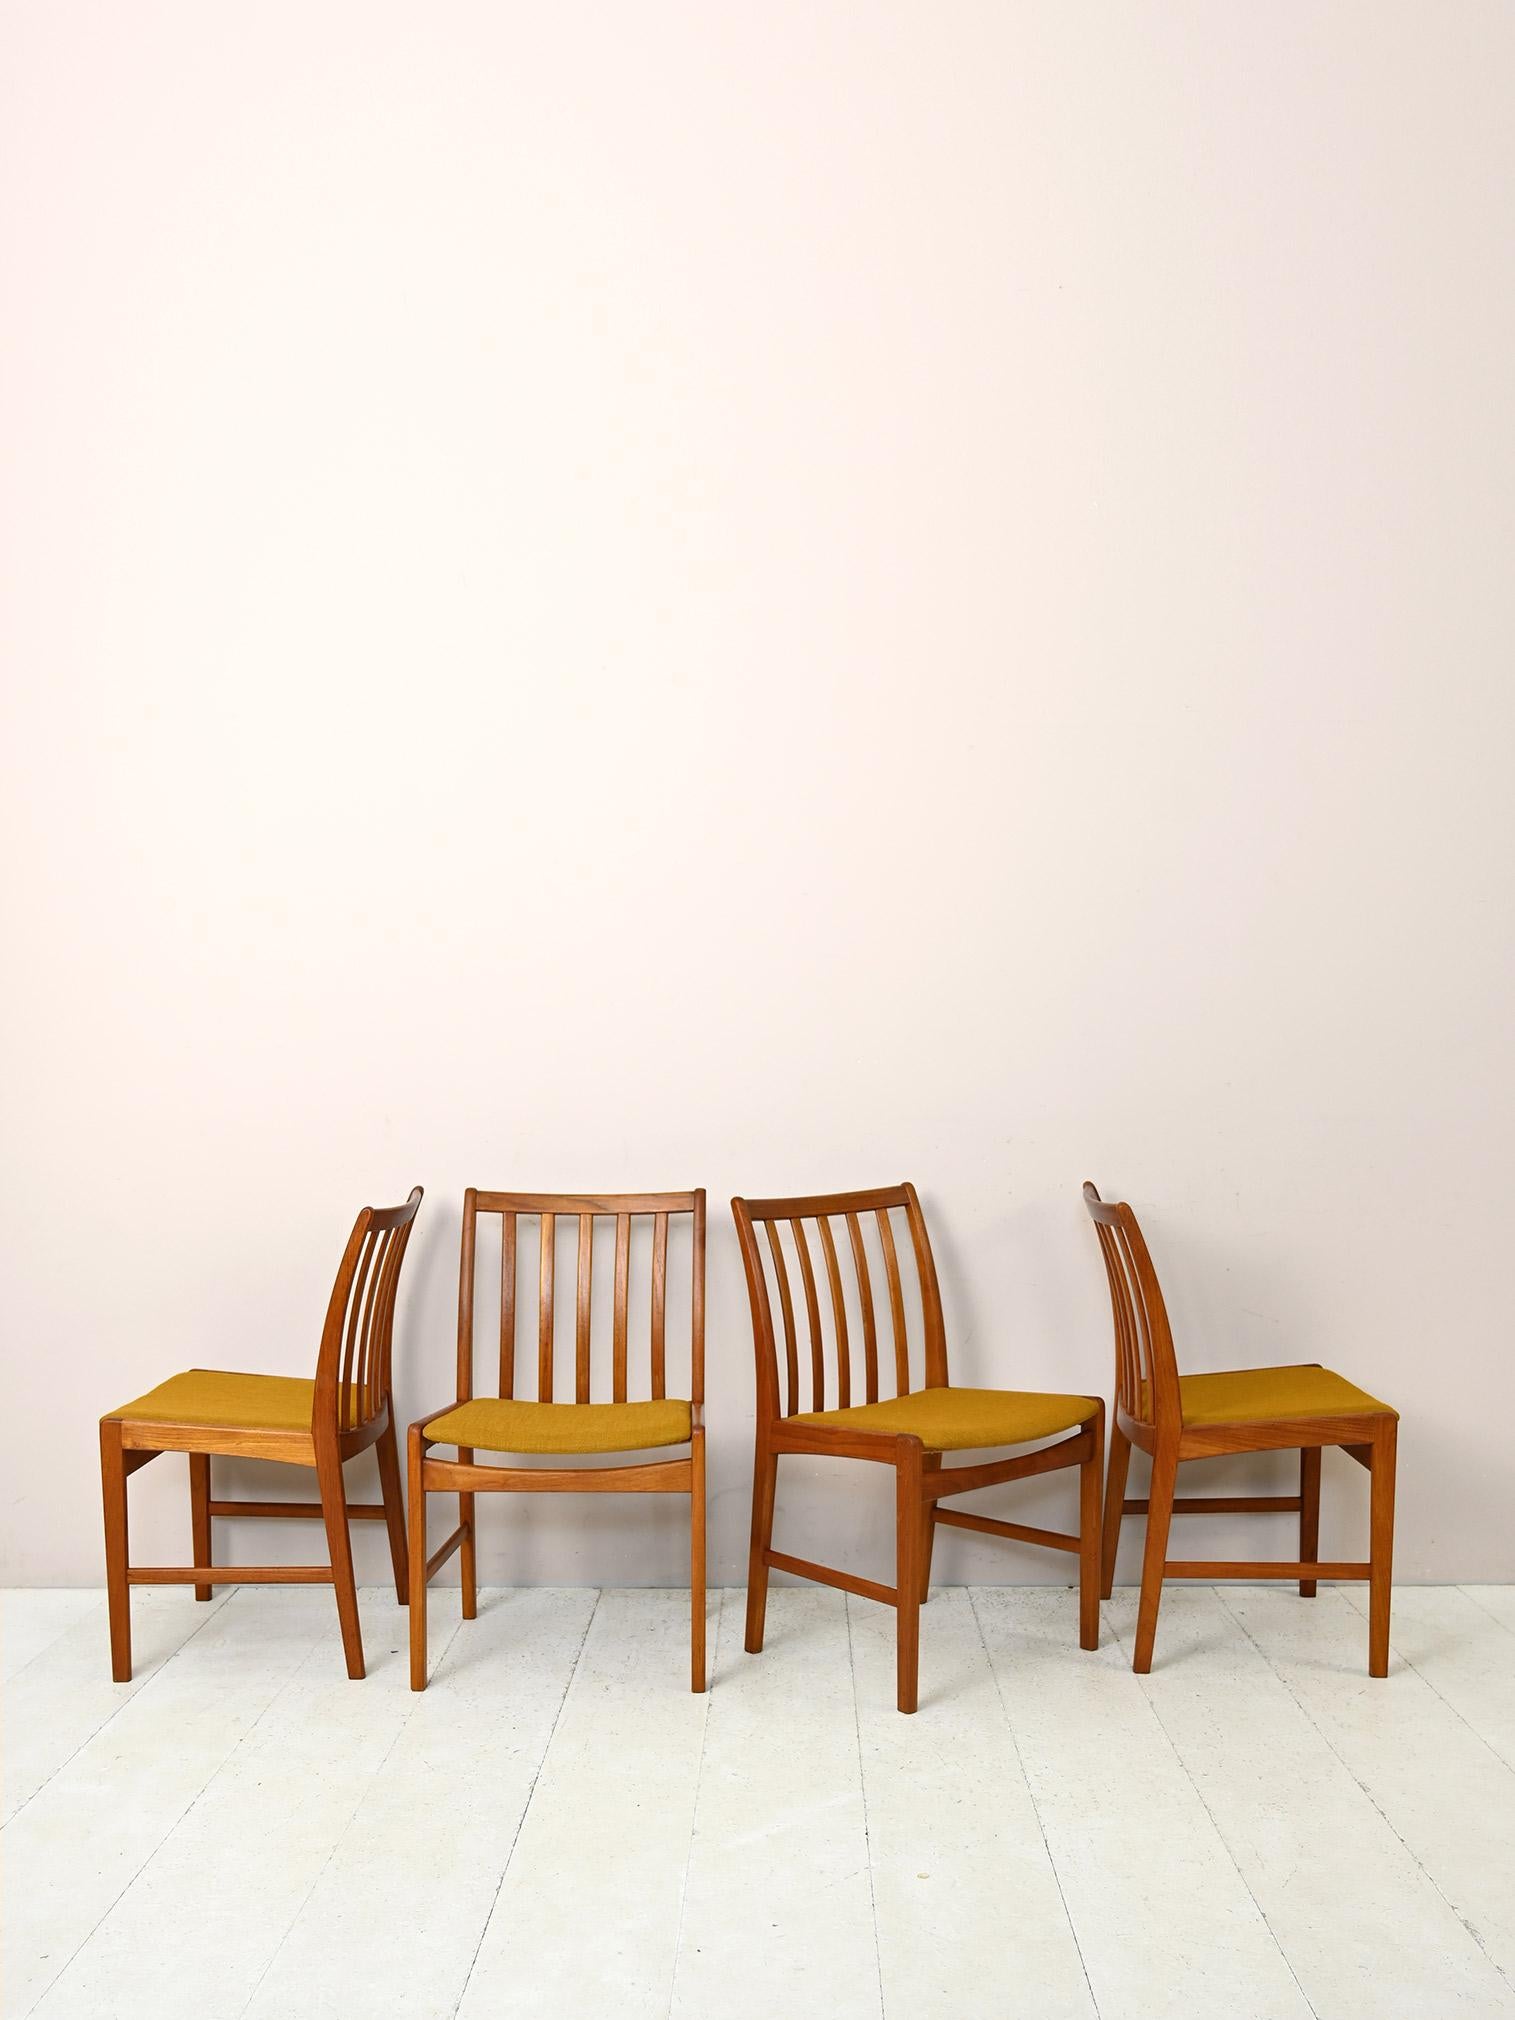 Ensemble de 4 chaises vintage originales des années 1960.

Composé d'un cadre en bois de teck et d'une assise légèrement rembourrée et retapissée de tissu ocre.
Les lignes modernes et élégantes renvoient au goût des Scandinaves pour le design simple